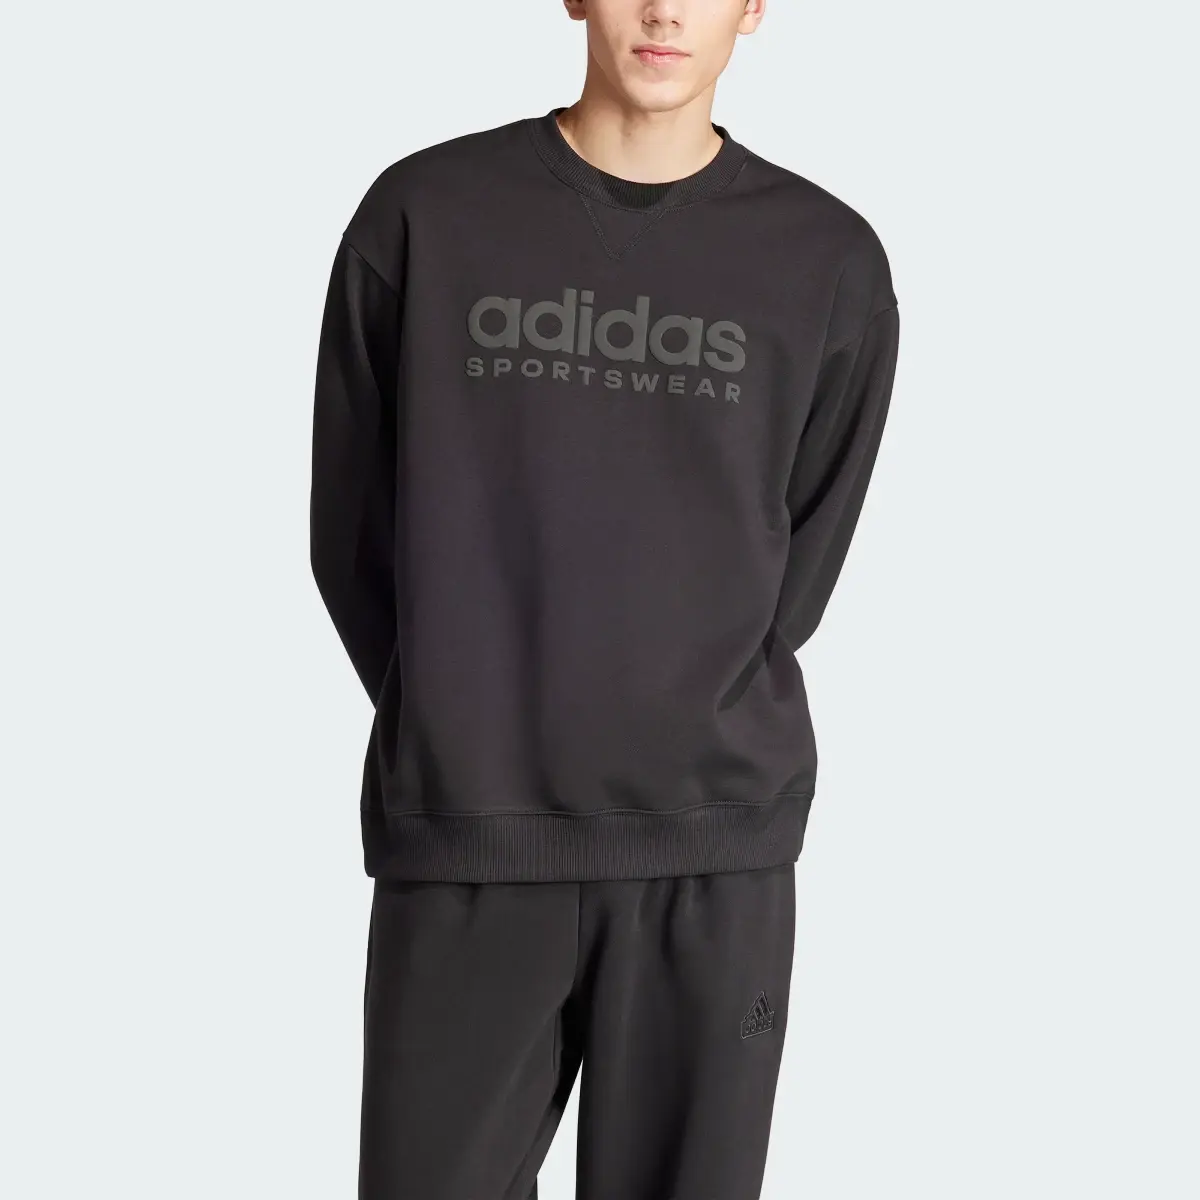 Adidas ALL SZN Fleece Graphic Sweatshirt. 1